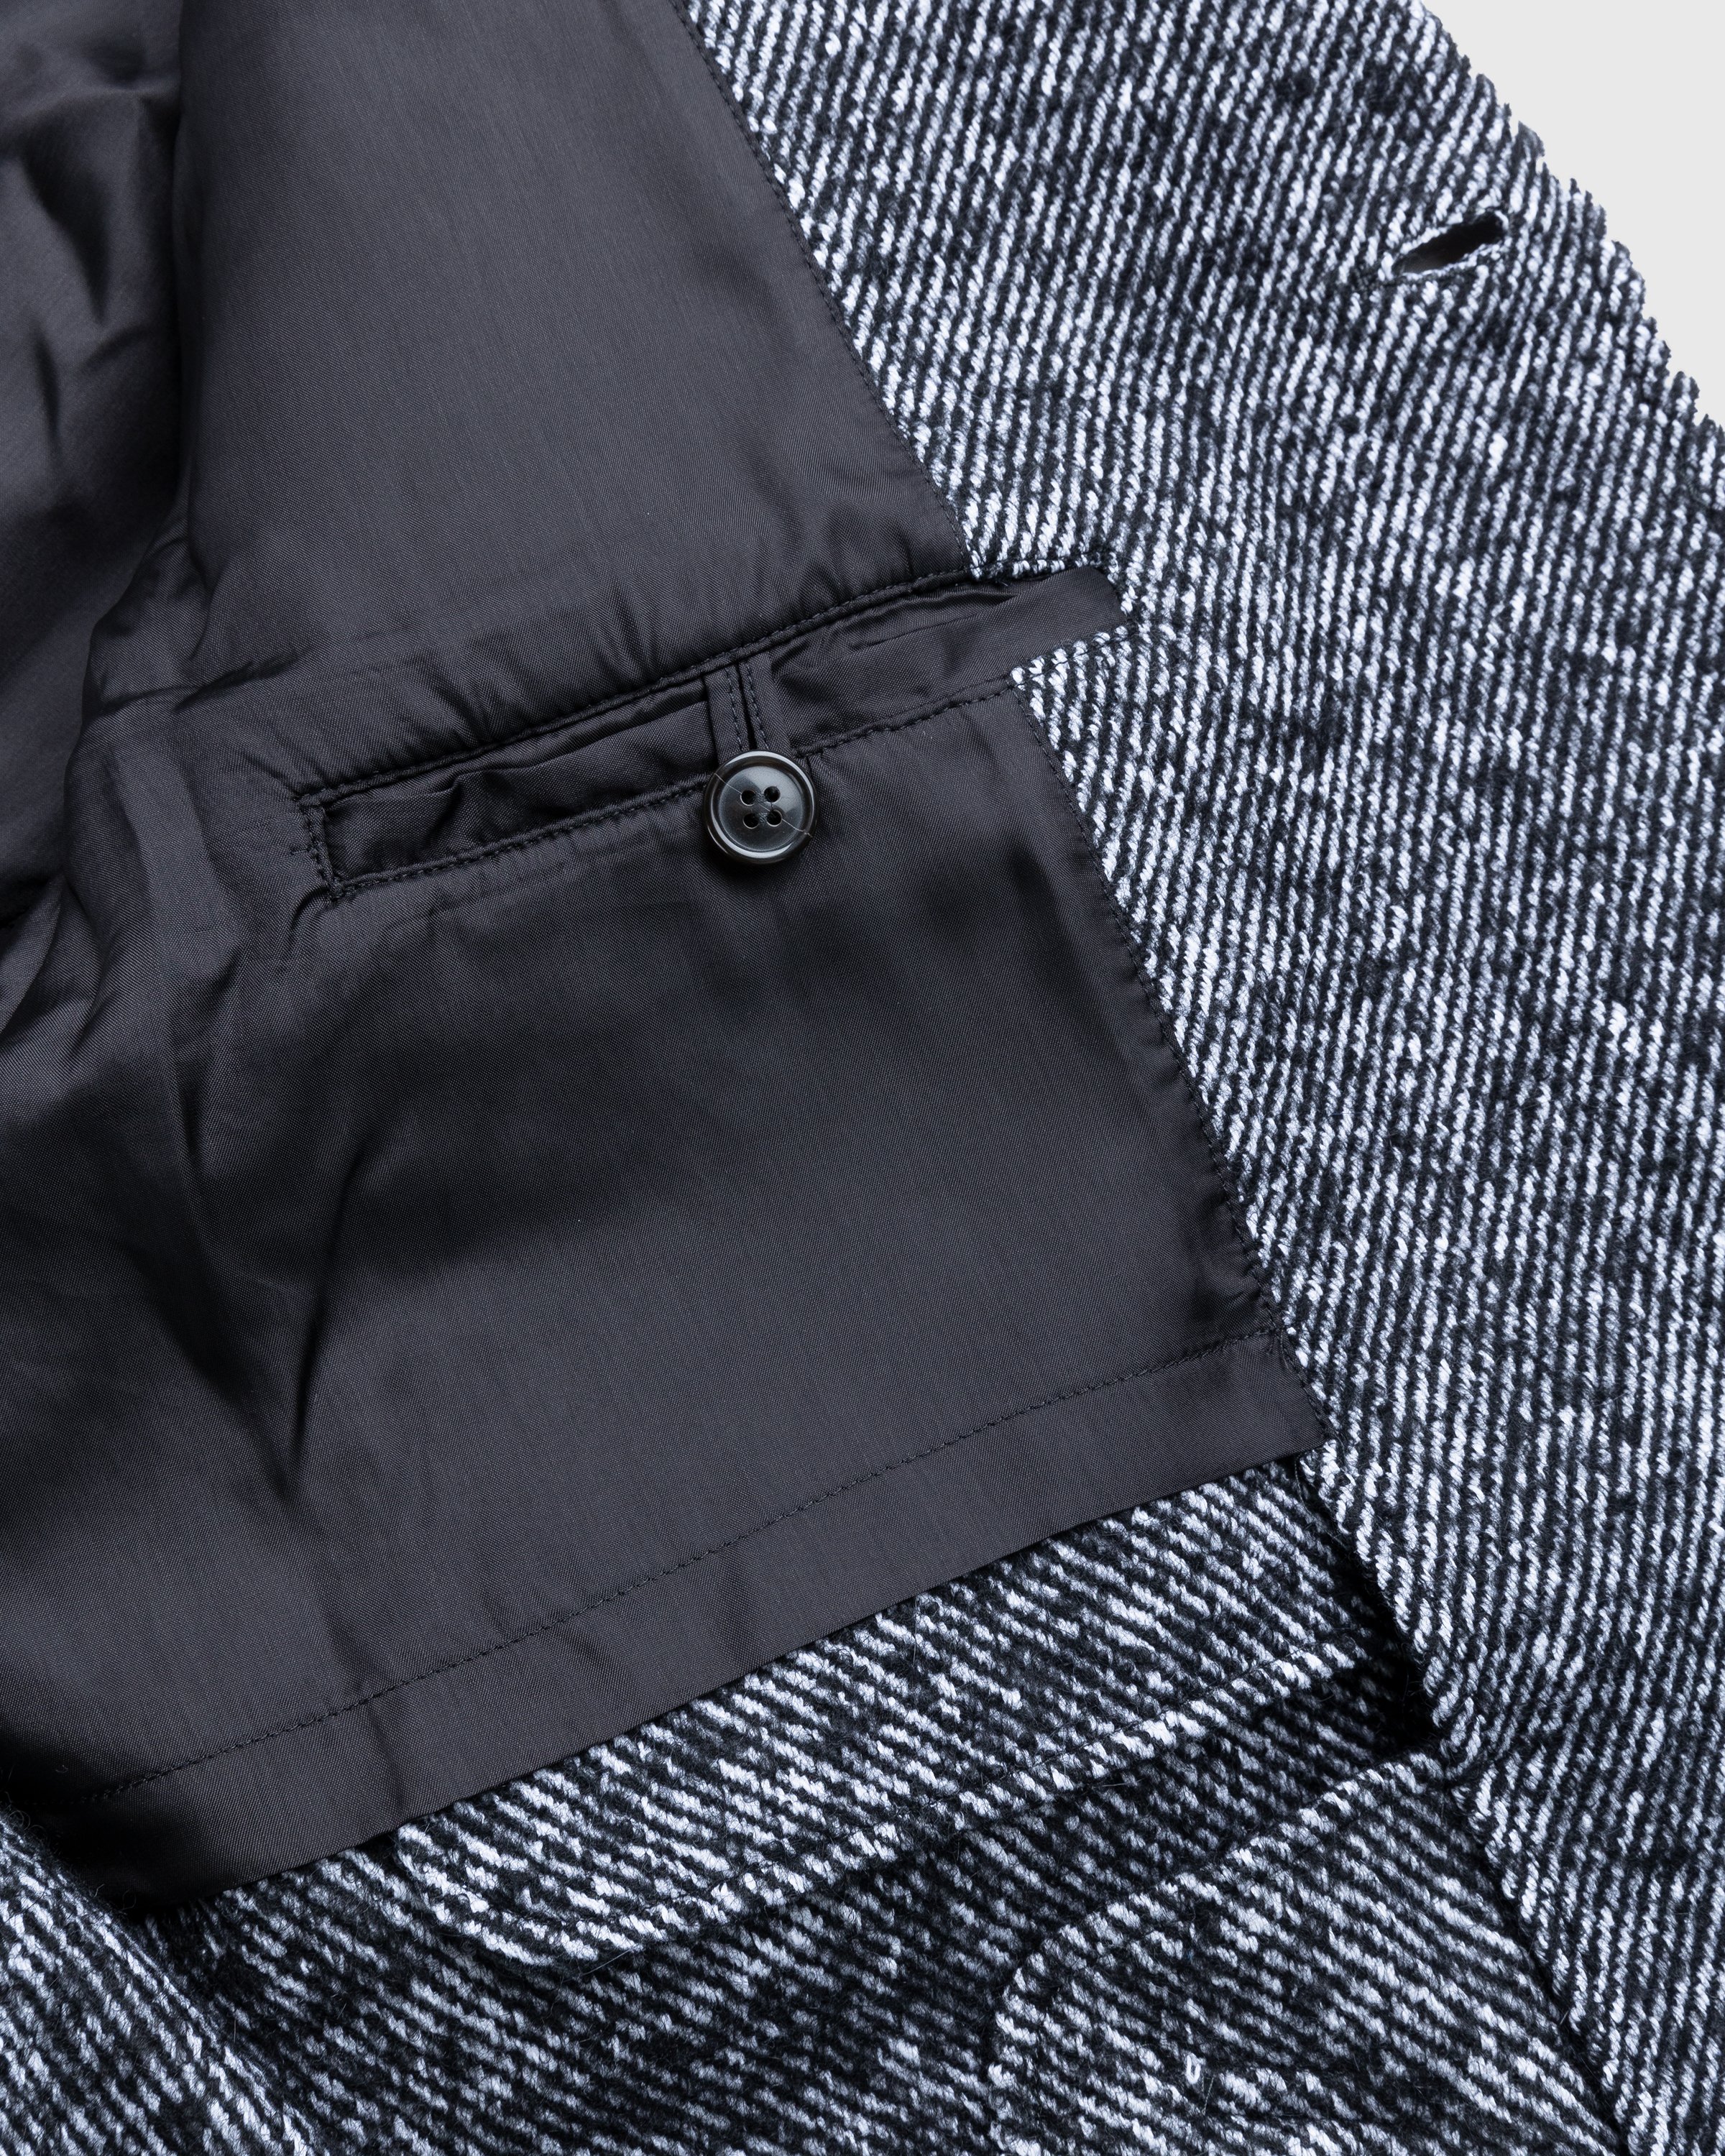 Kenzo - Coat Black - Clothing - Black - Image 5